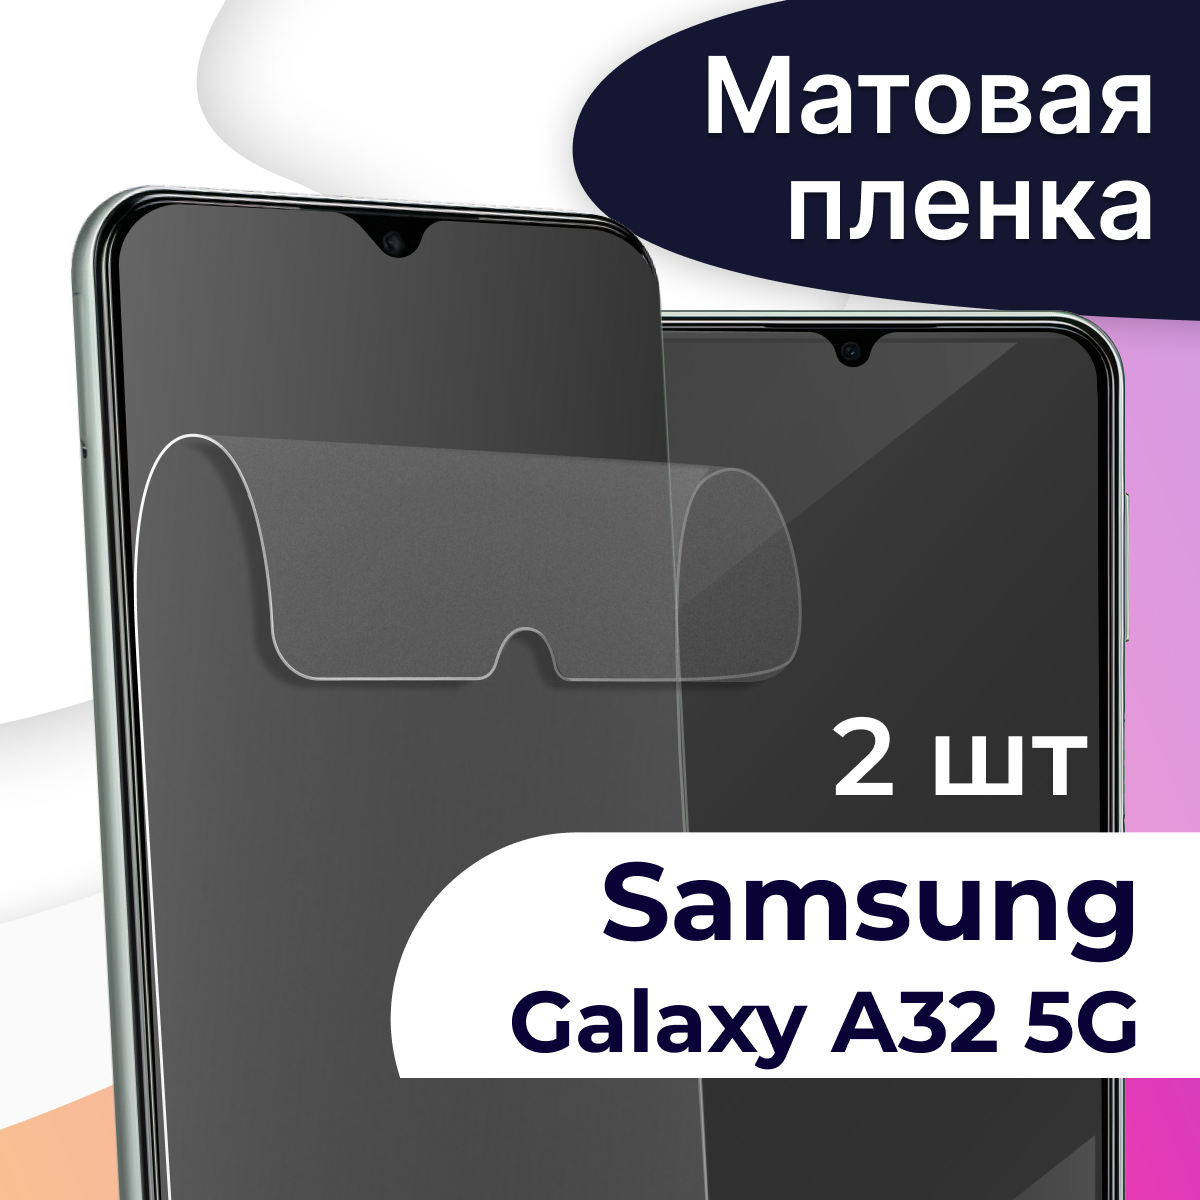 Комплект 2 шт. Матовая пленка на телефон Samsung Galaxy A32 5G / Гидрогелевая противоударная пленка для Самсунг Галакси А32 5Г / Защитная пленка